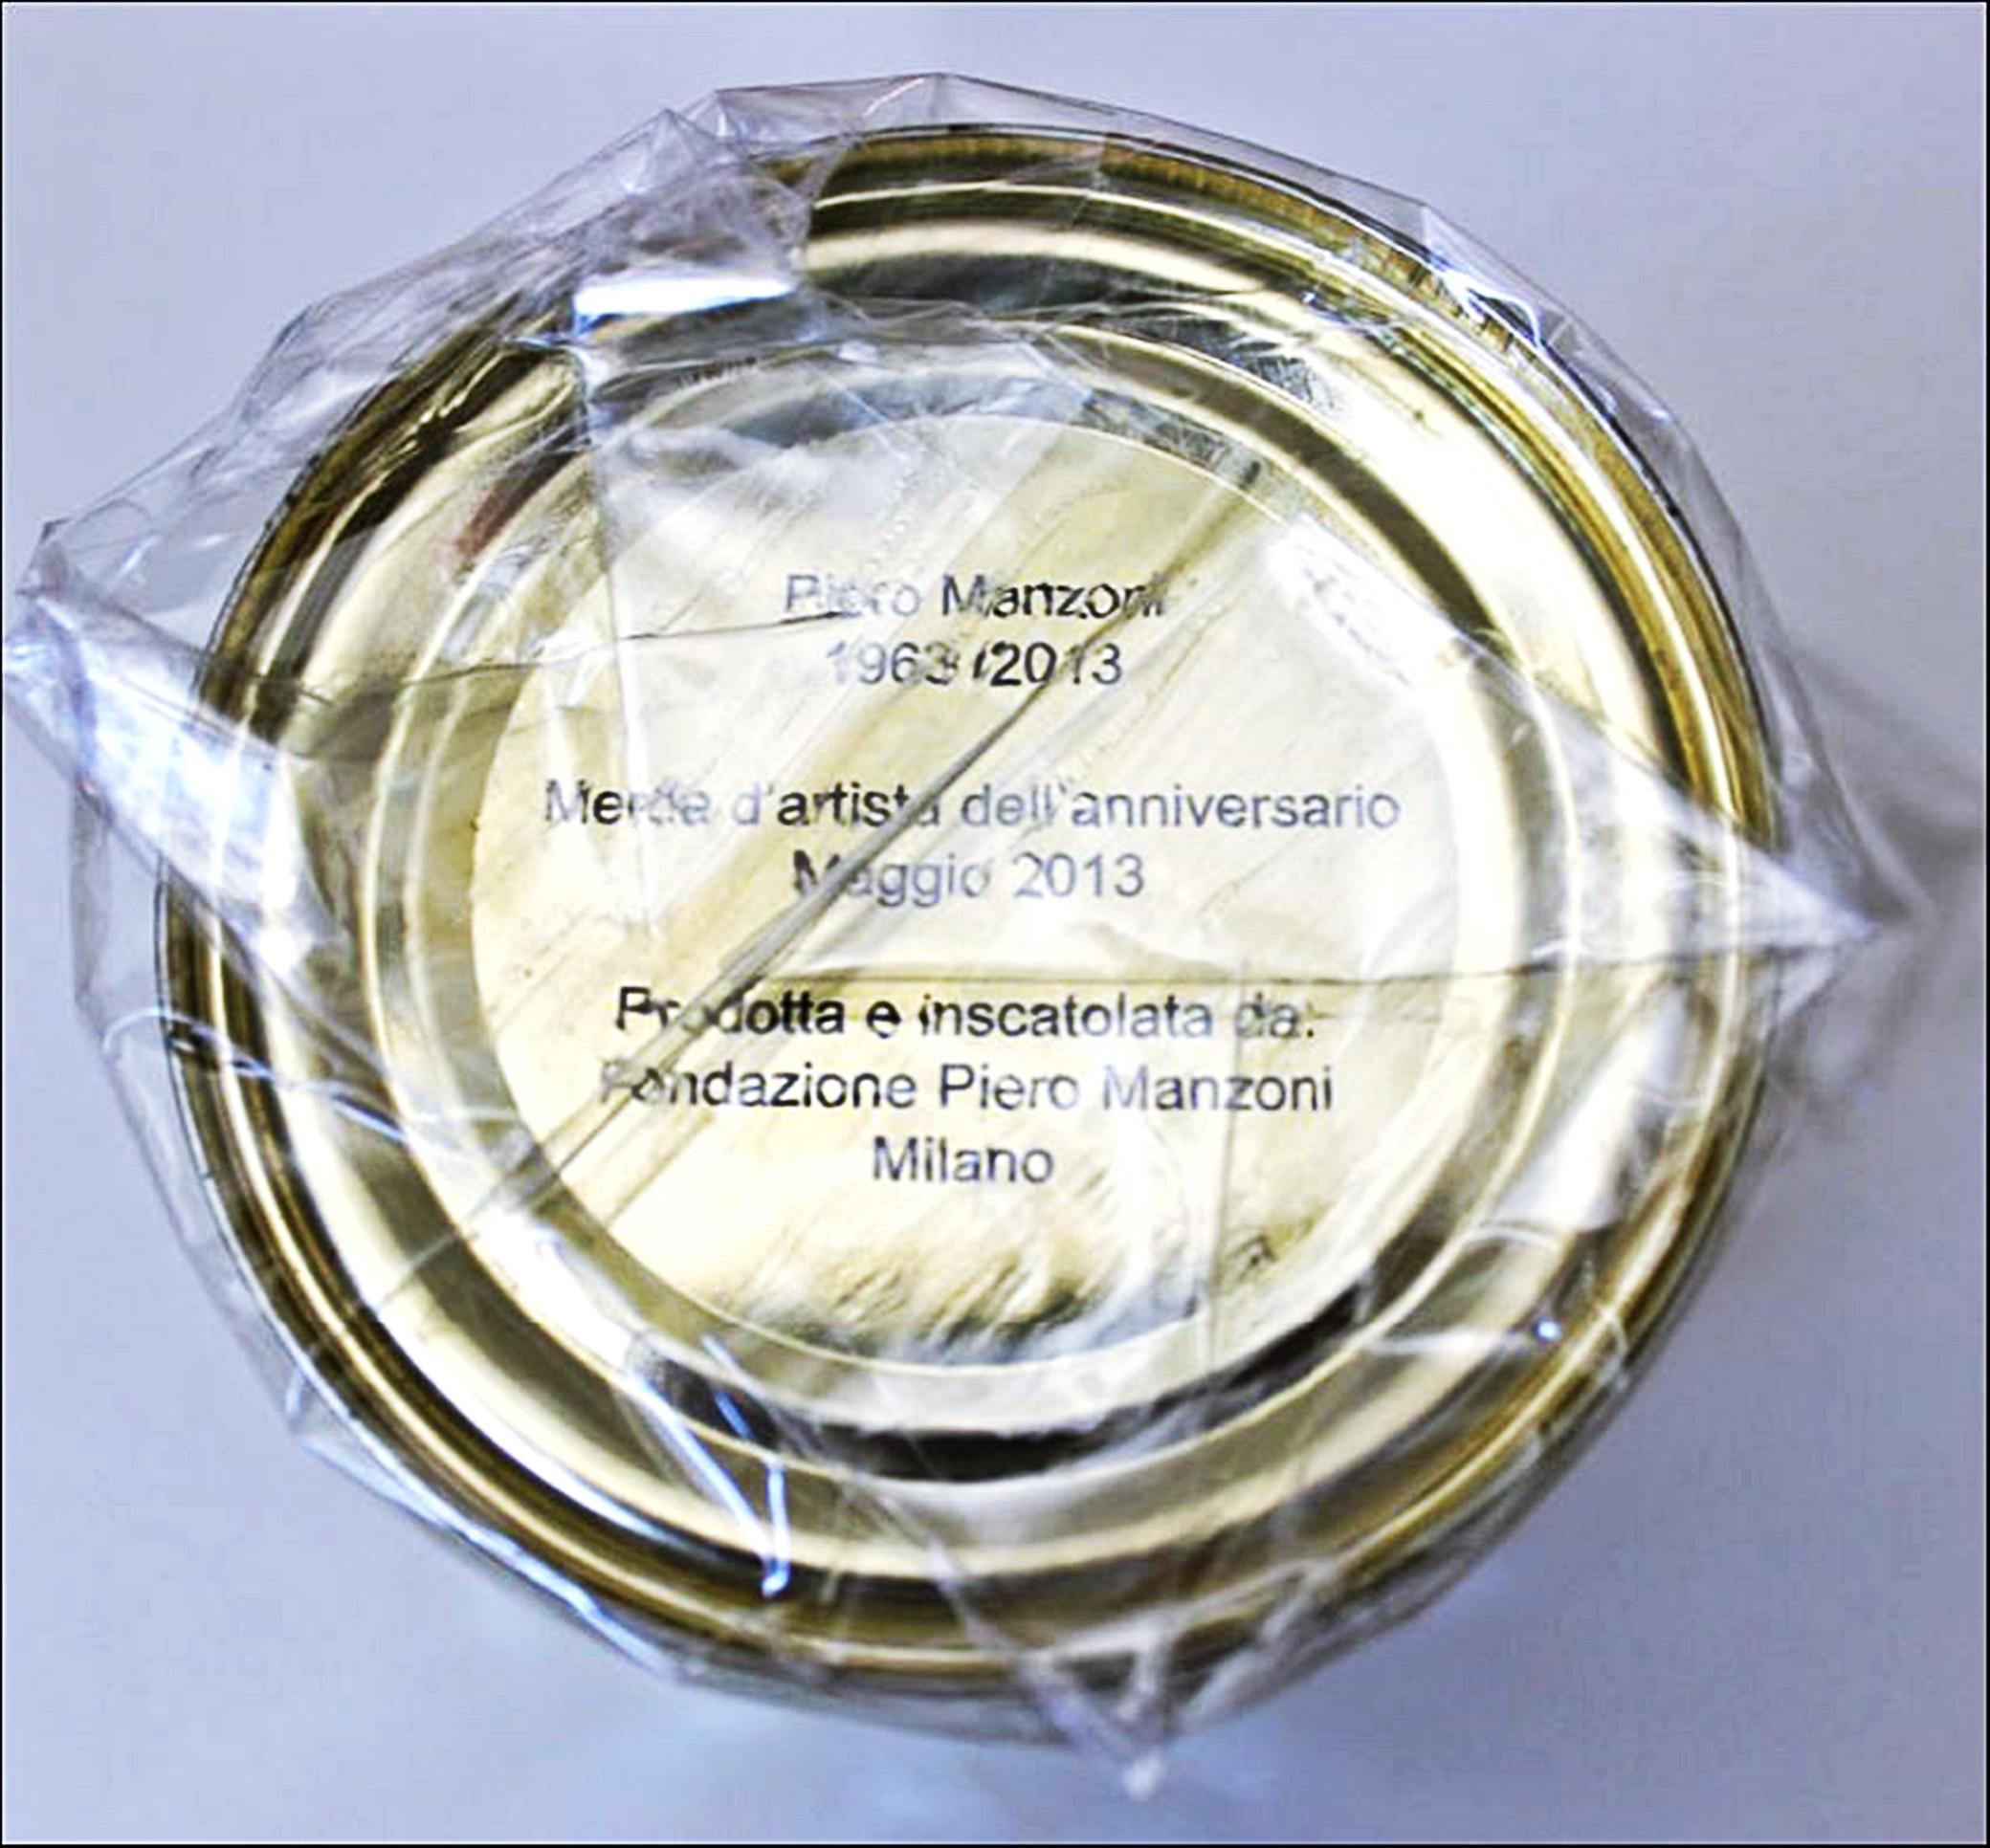 Piero Manzoni
Merda d'Artista - Merde d'Artiste - Artist's Shit, 2013
Boîte de conserve scellée dans un papier spécial de lithographie offset et emballée sous film rétractable scellé par une empreinte digitale.
La signature de l'artiste est apposée